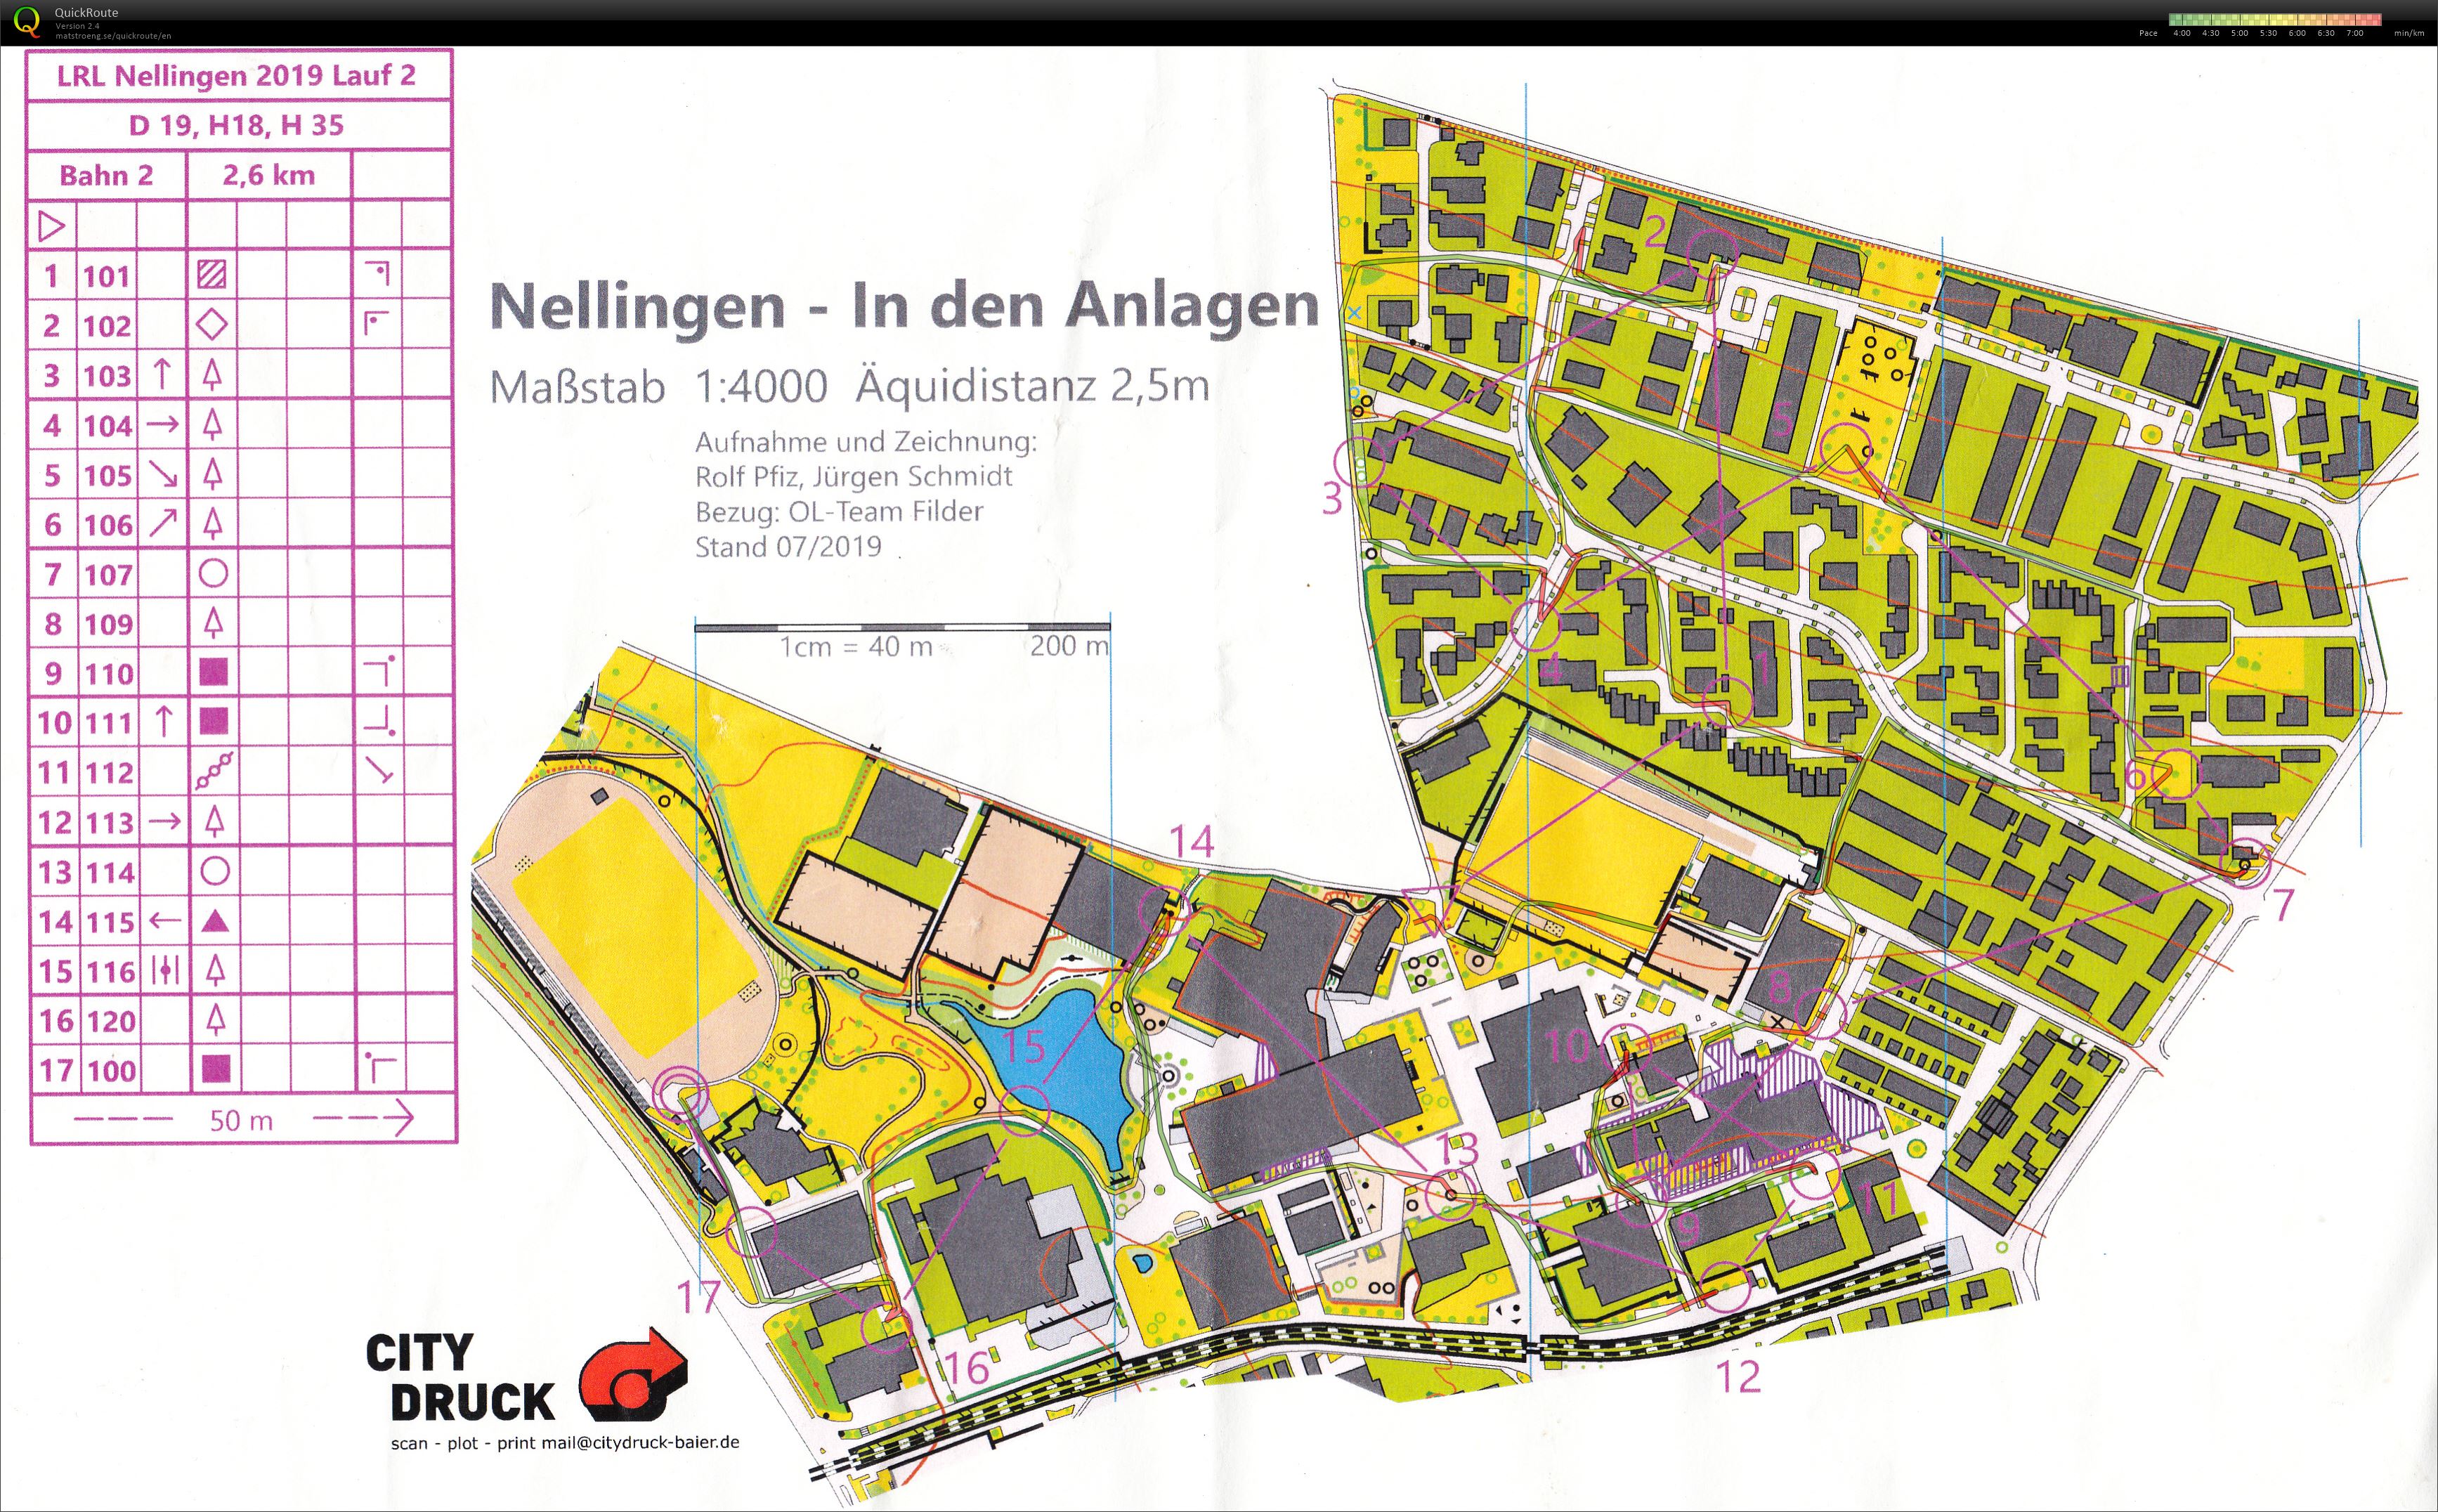 LRL Nellingen - 2 (20-07-2019)